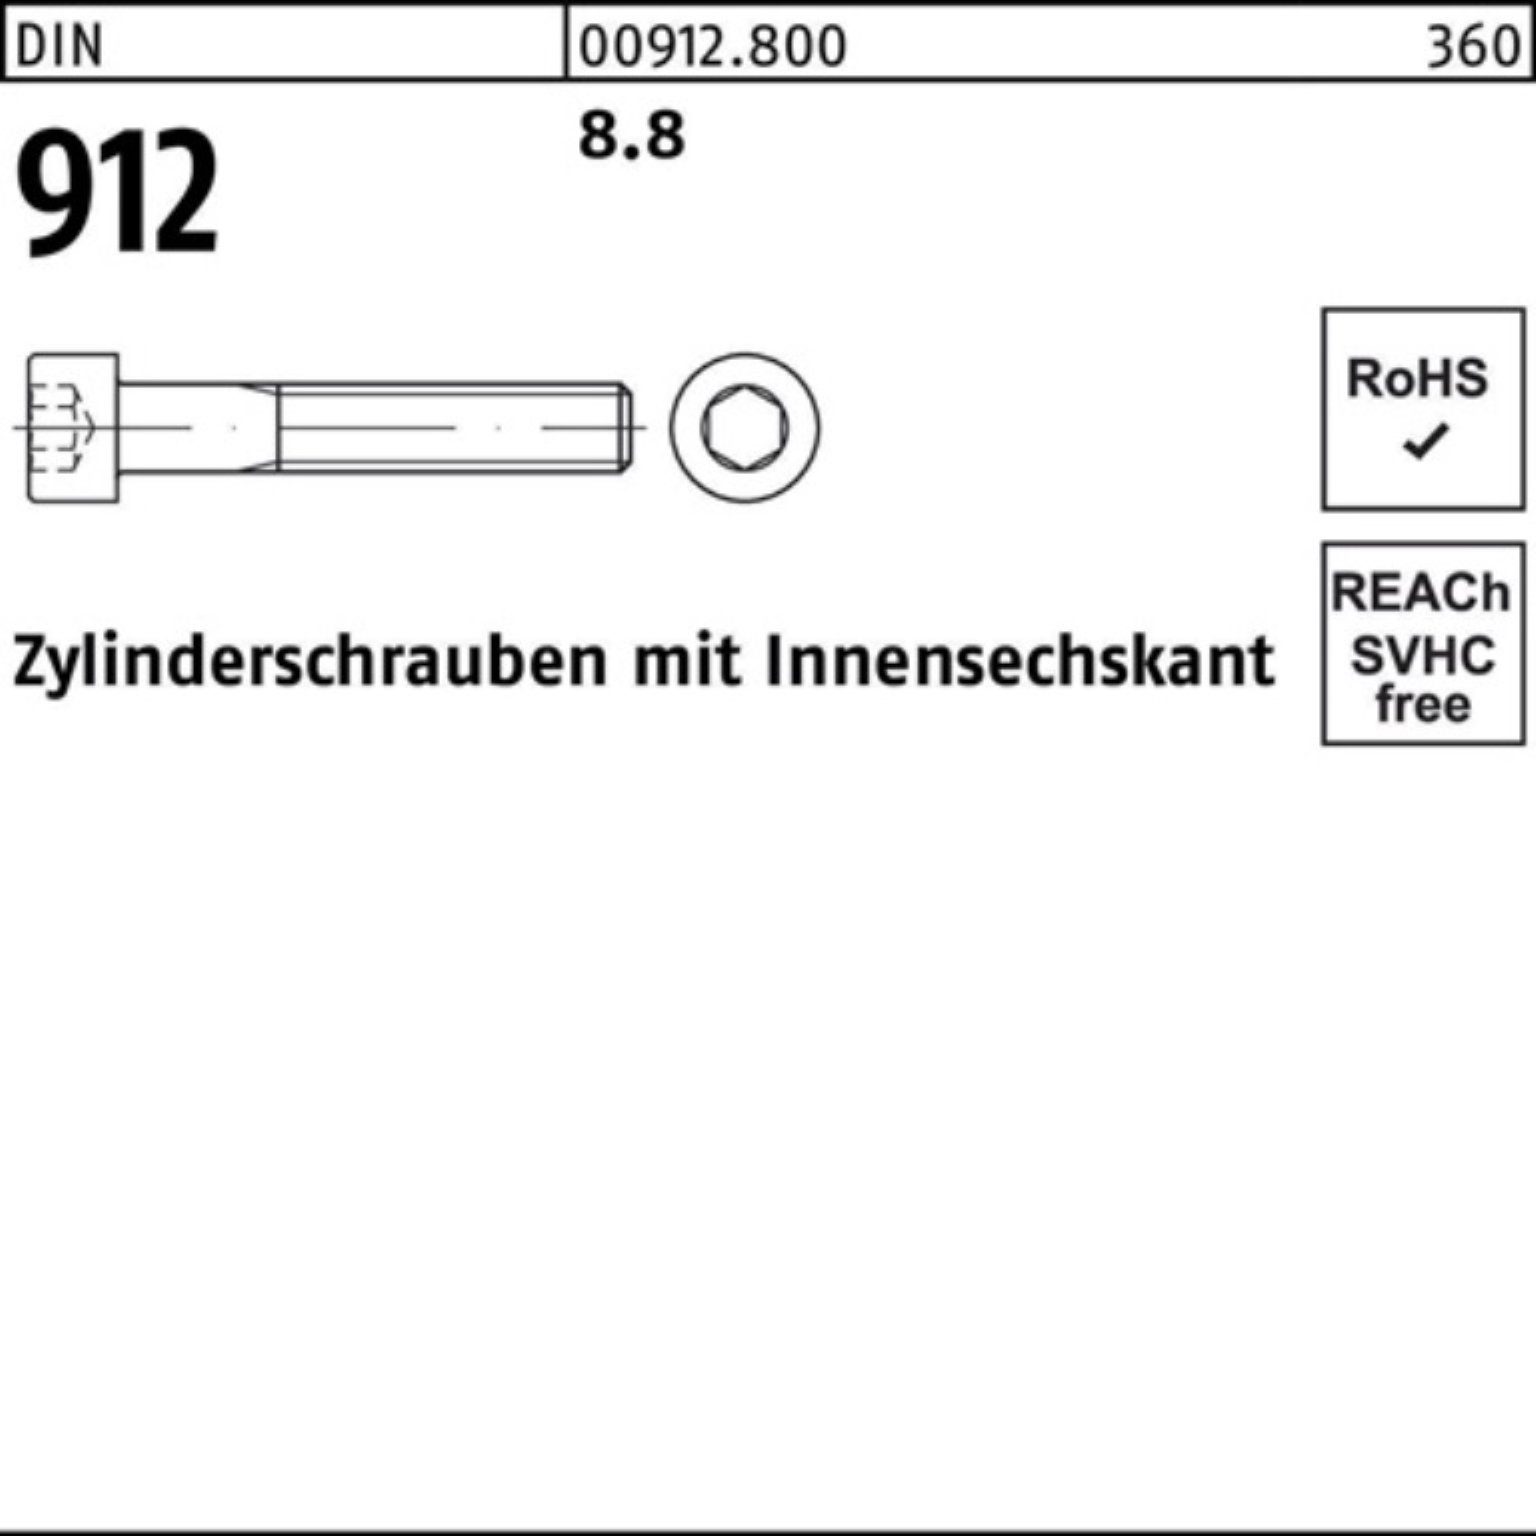 DIN Innen-6kt DI 8.8 Stück Pack 100er 25 25 Zylinderschraube Reyher Zylinderschraube 912 M20x